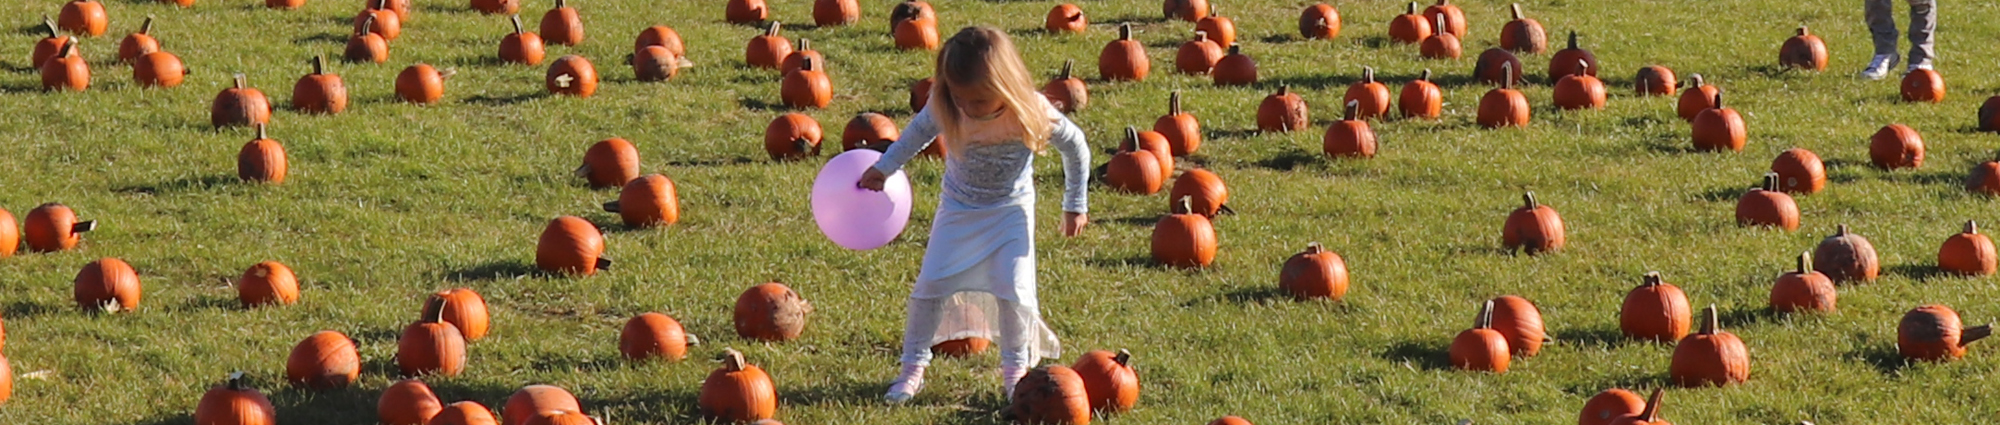 child in a pumpkin patch